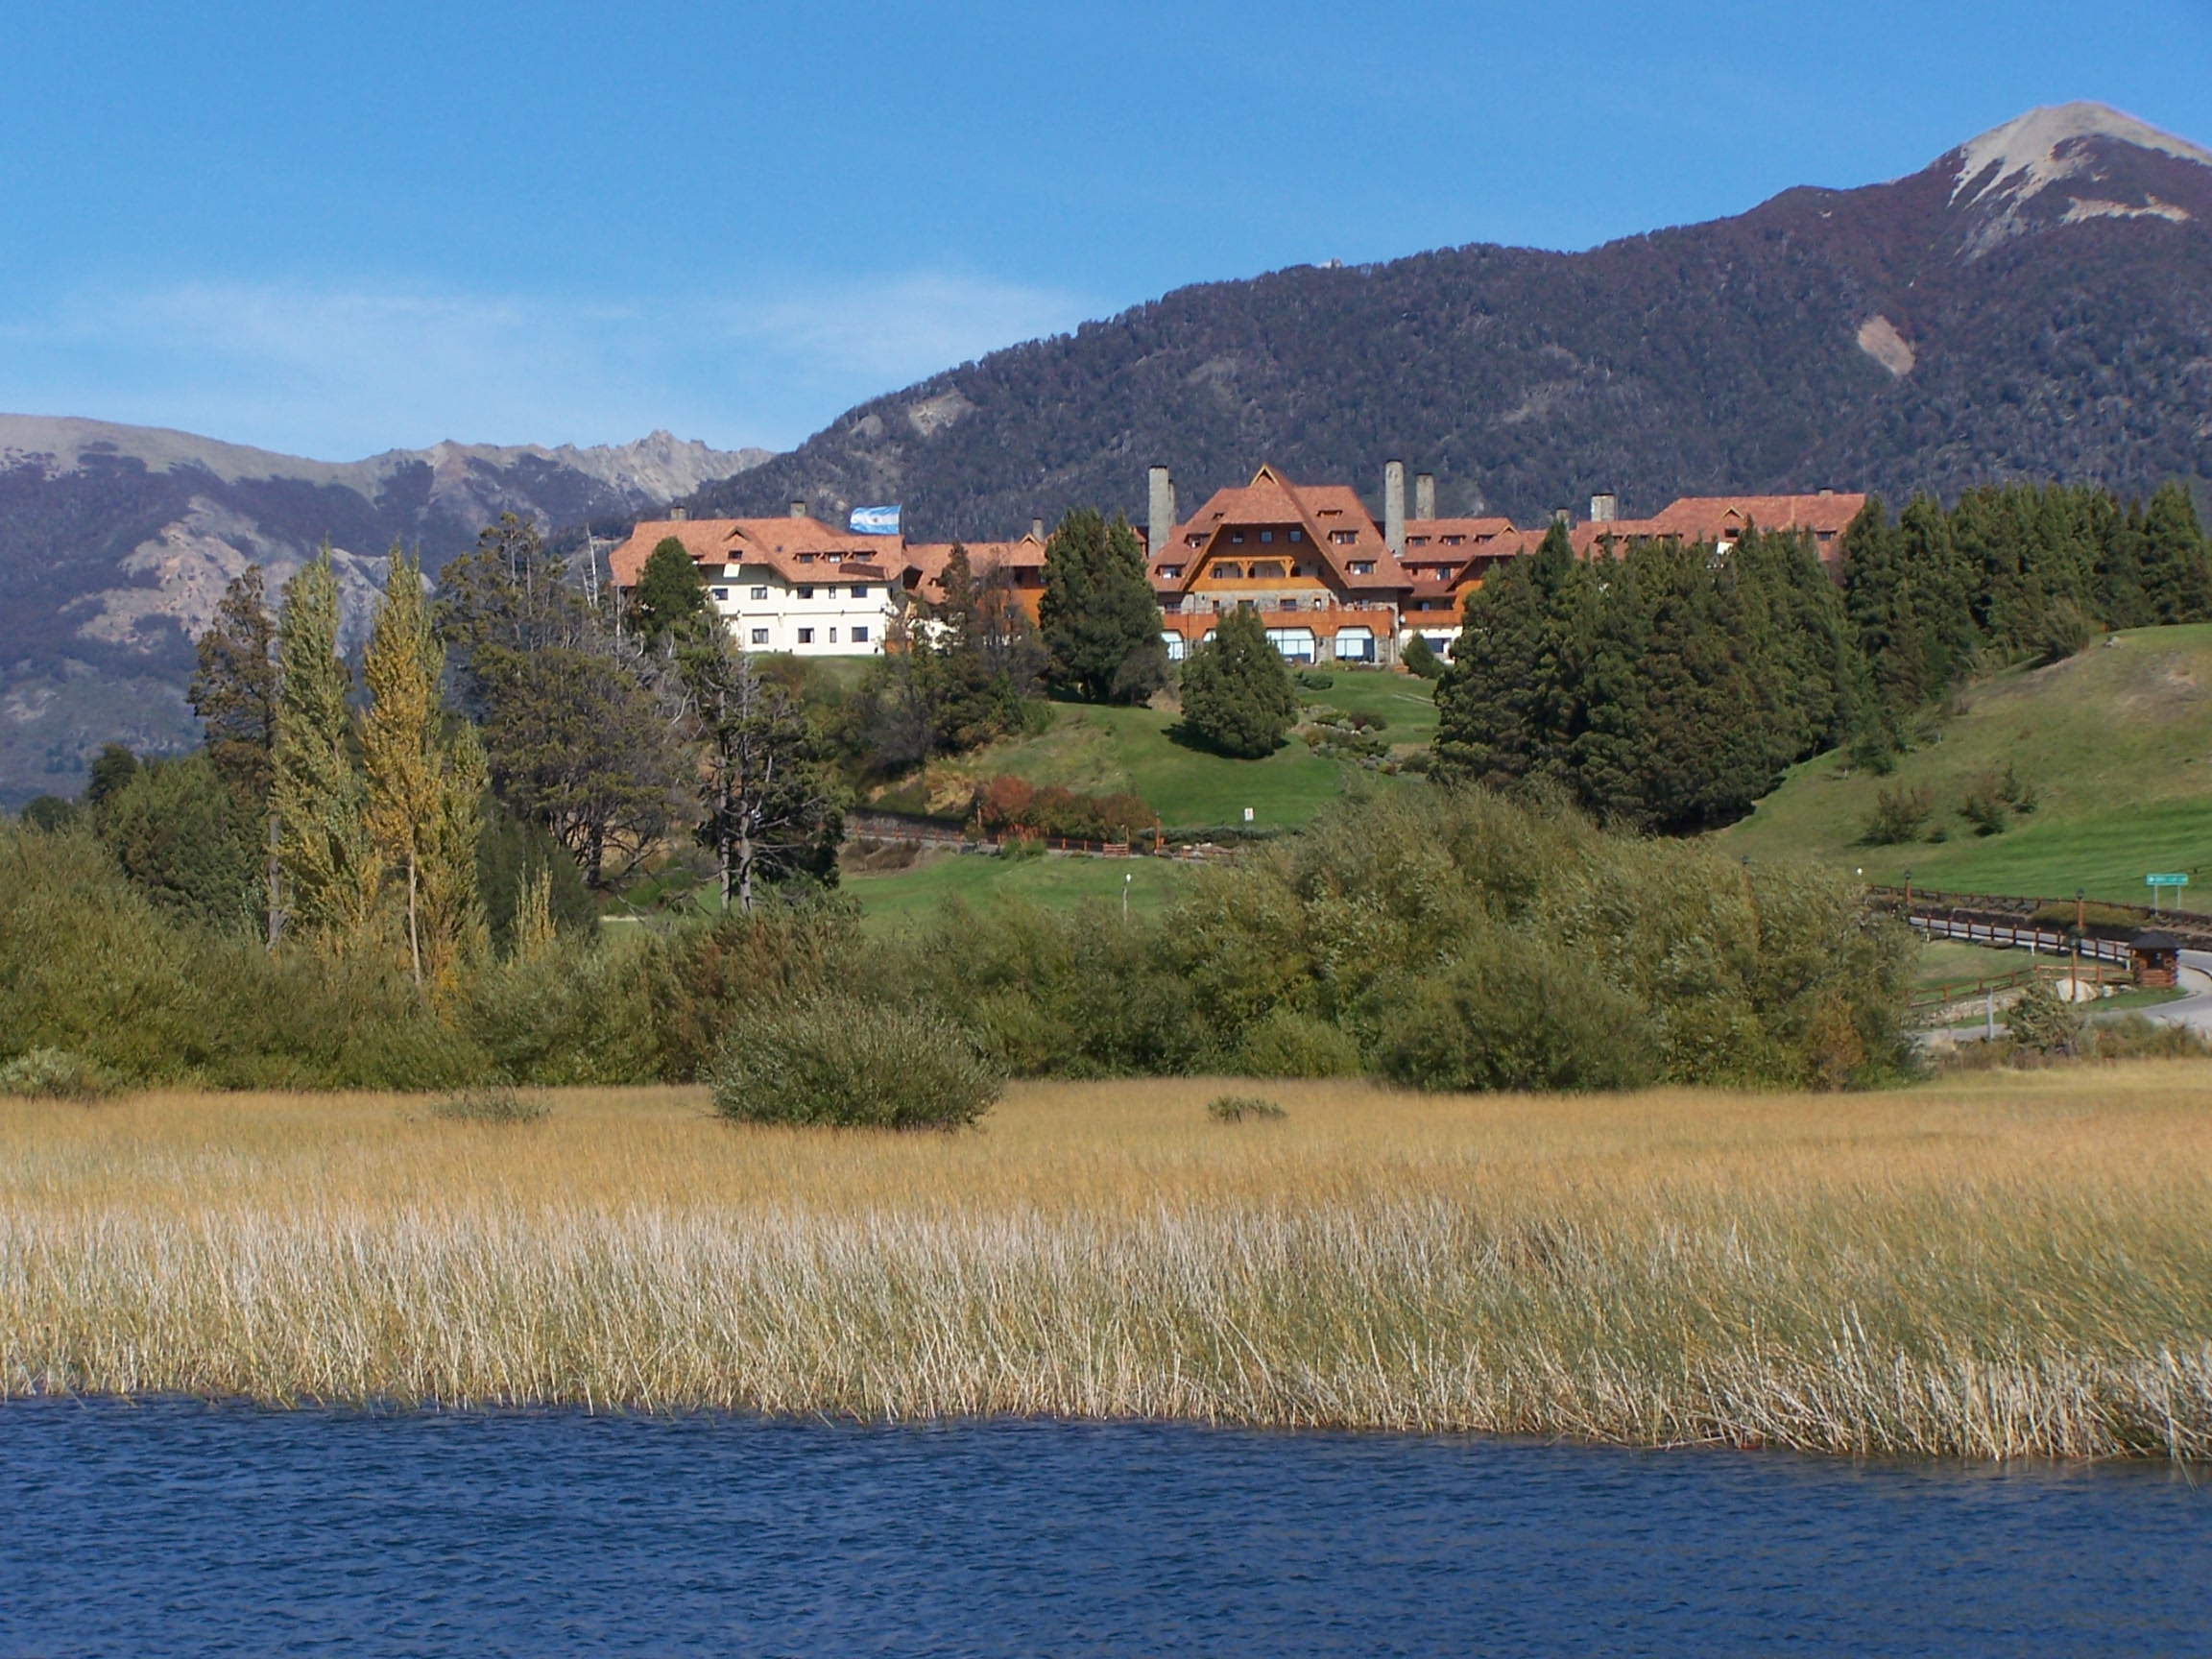 Famous Llao Llao hotel, Bariloche, Argentina's Lake District